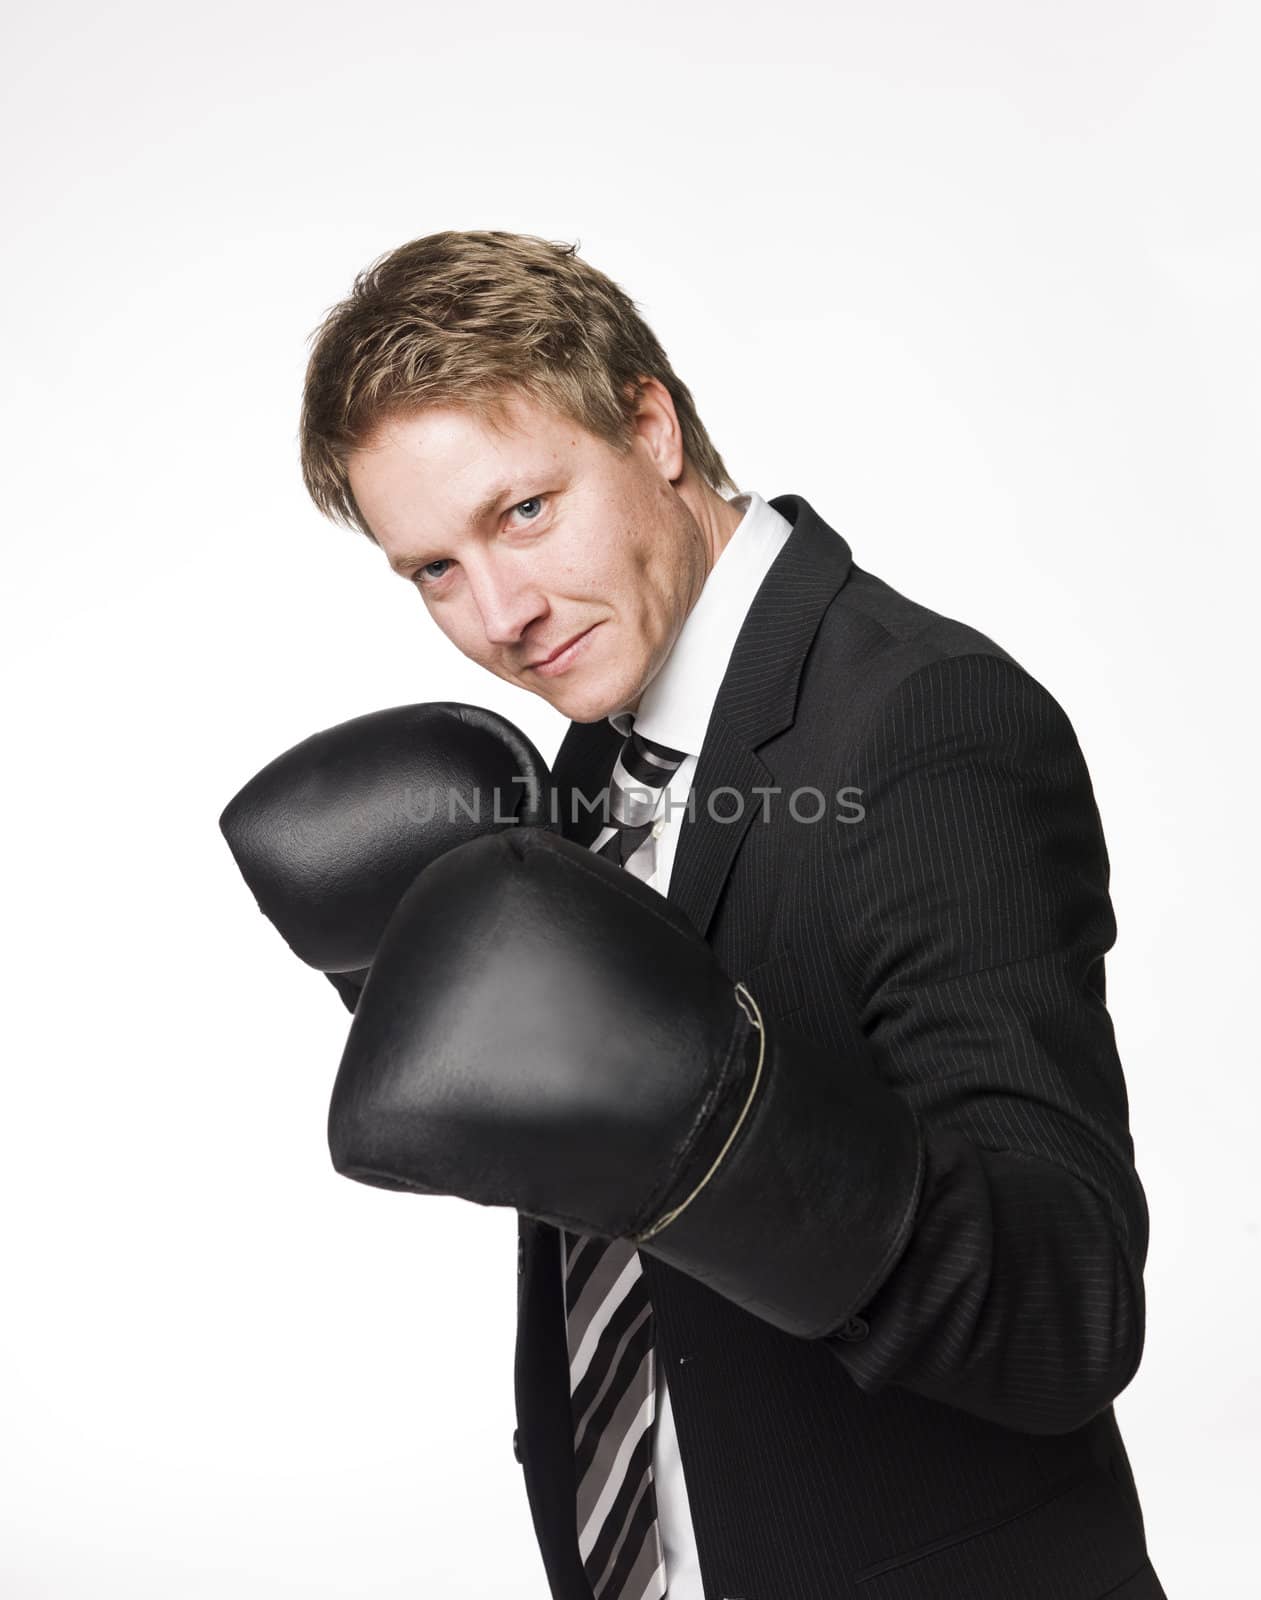 Buisnessman in boxinggloves by gemenacom